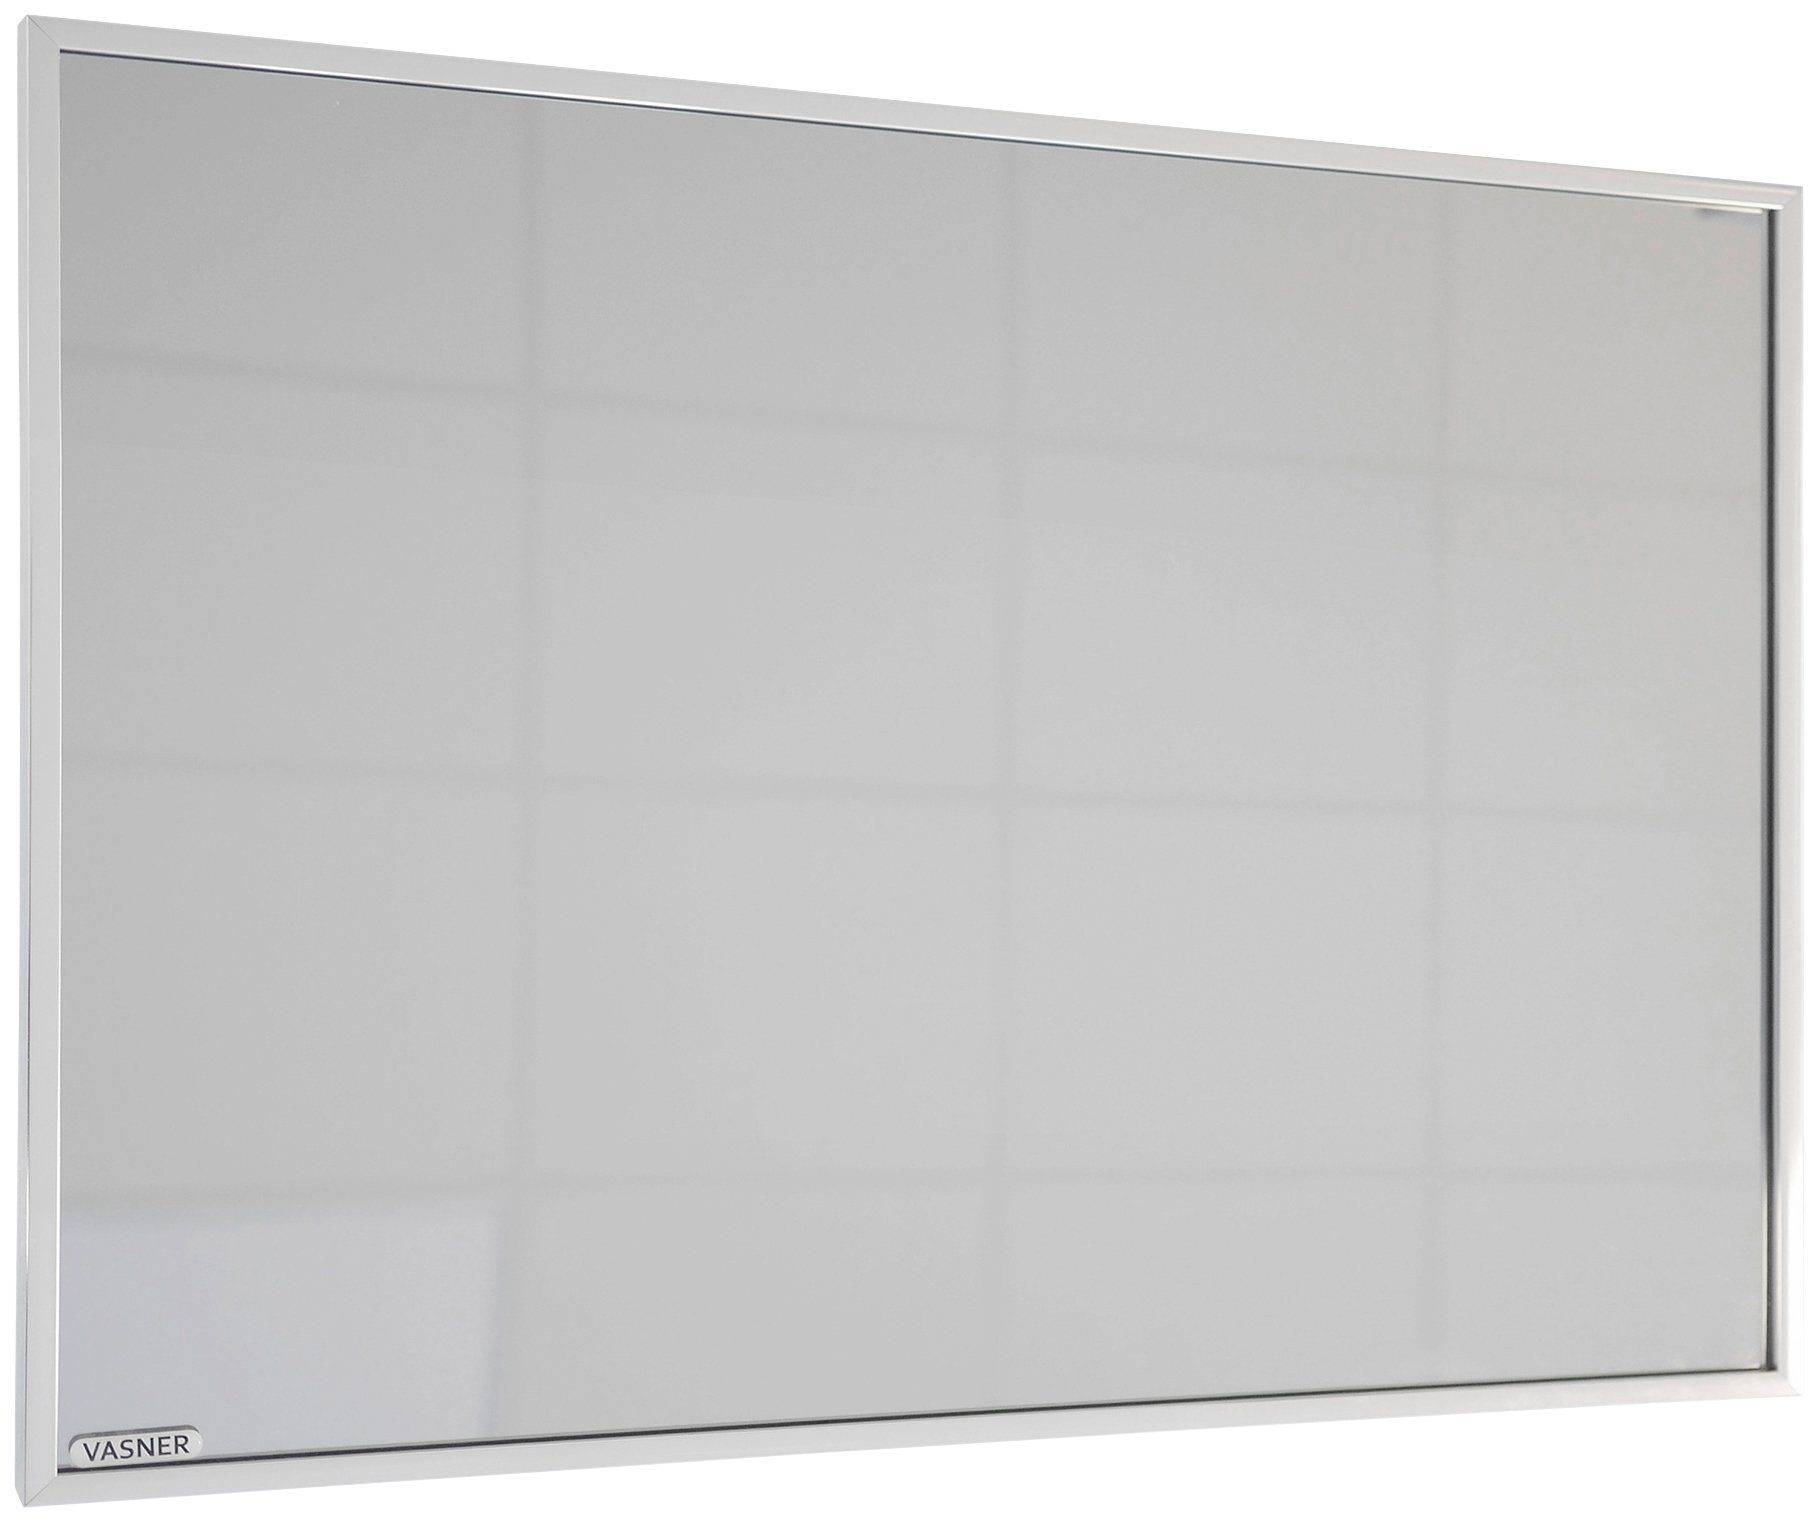 Vasner Zipris S 900 Infrarotheizung Spiegelheizung W, 900, mit Chrom-Rahmen